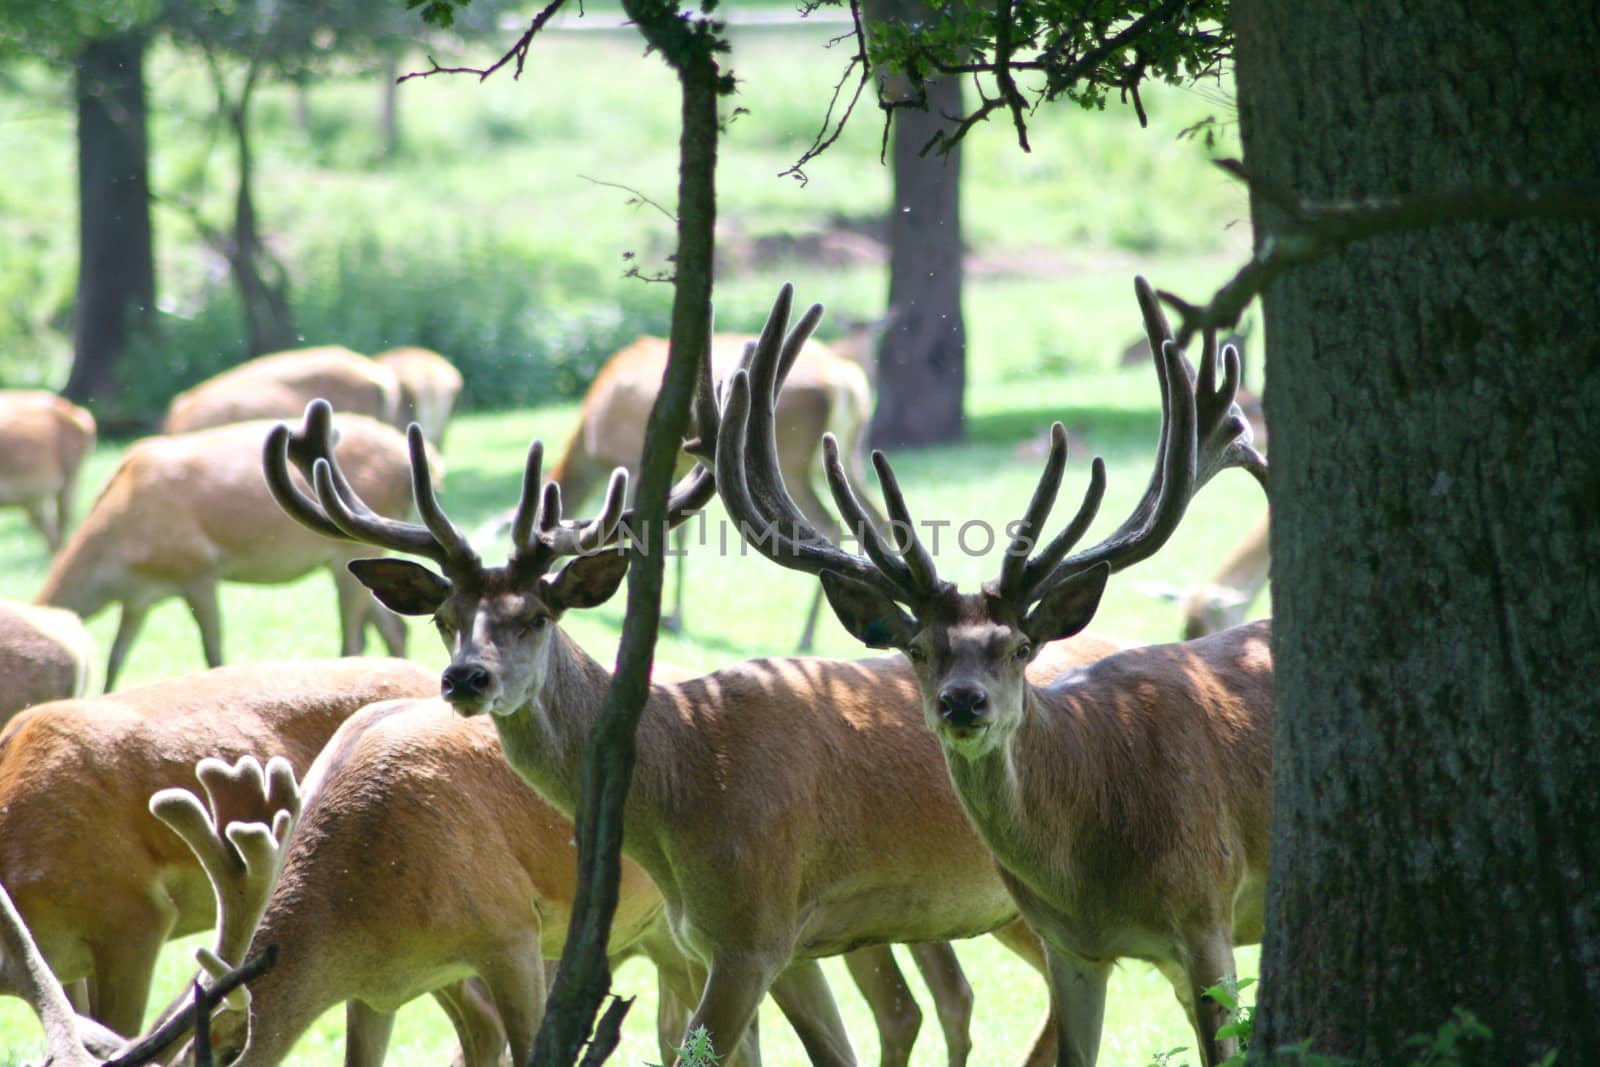 a herd of deer, grazing in 